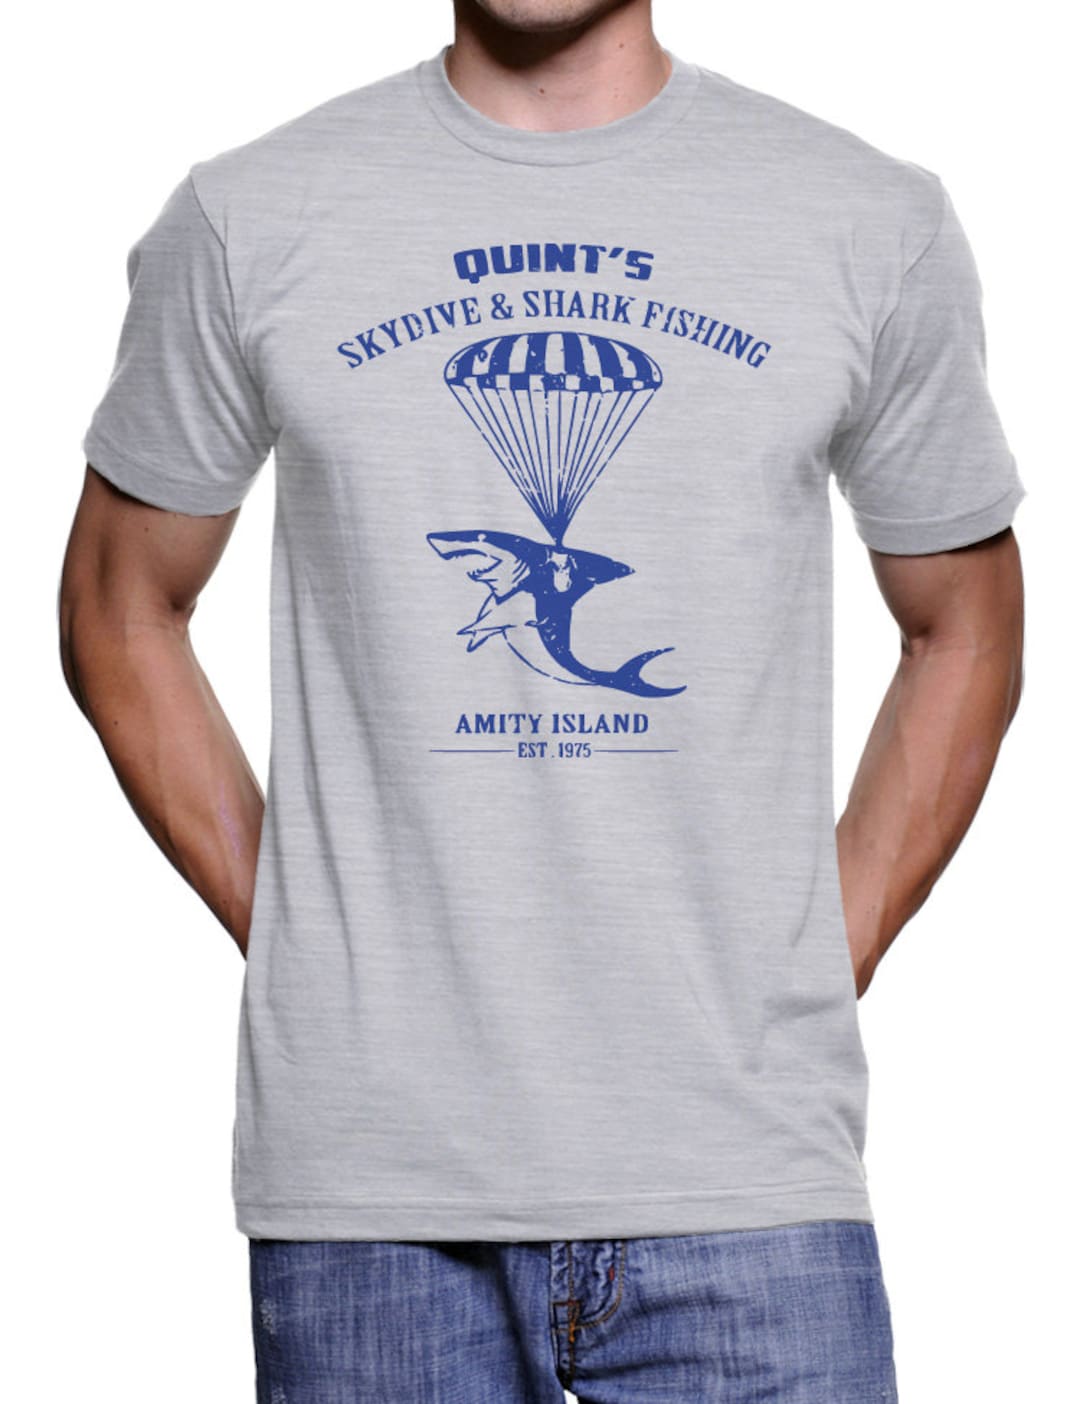 Quints Shark Fishing T-shirt Funny Tshirts Mens Womens Tshirts